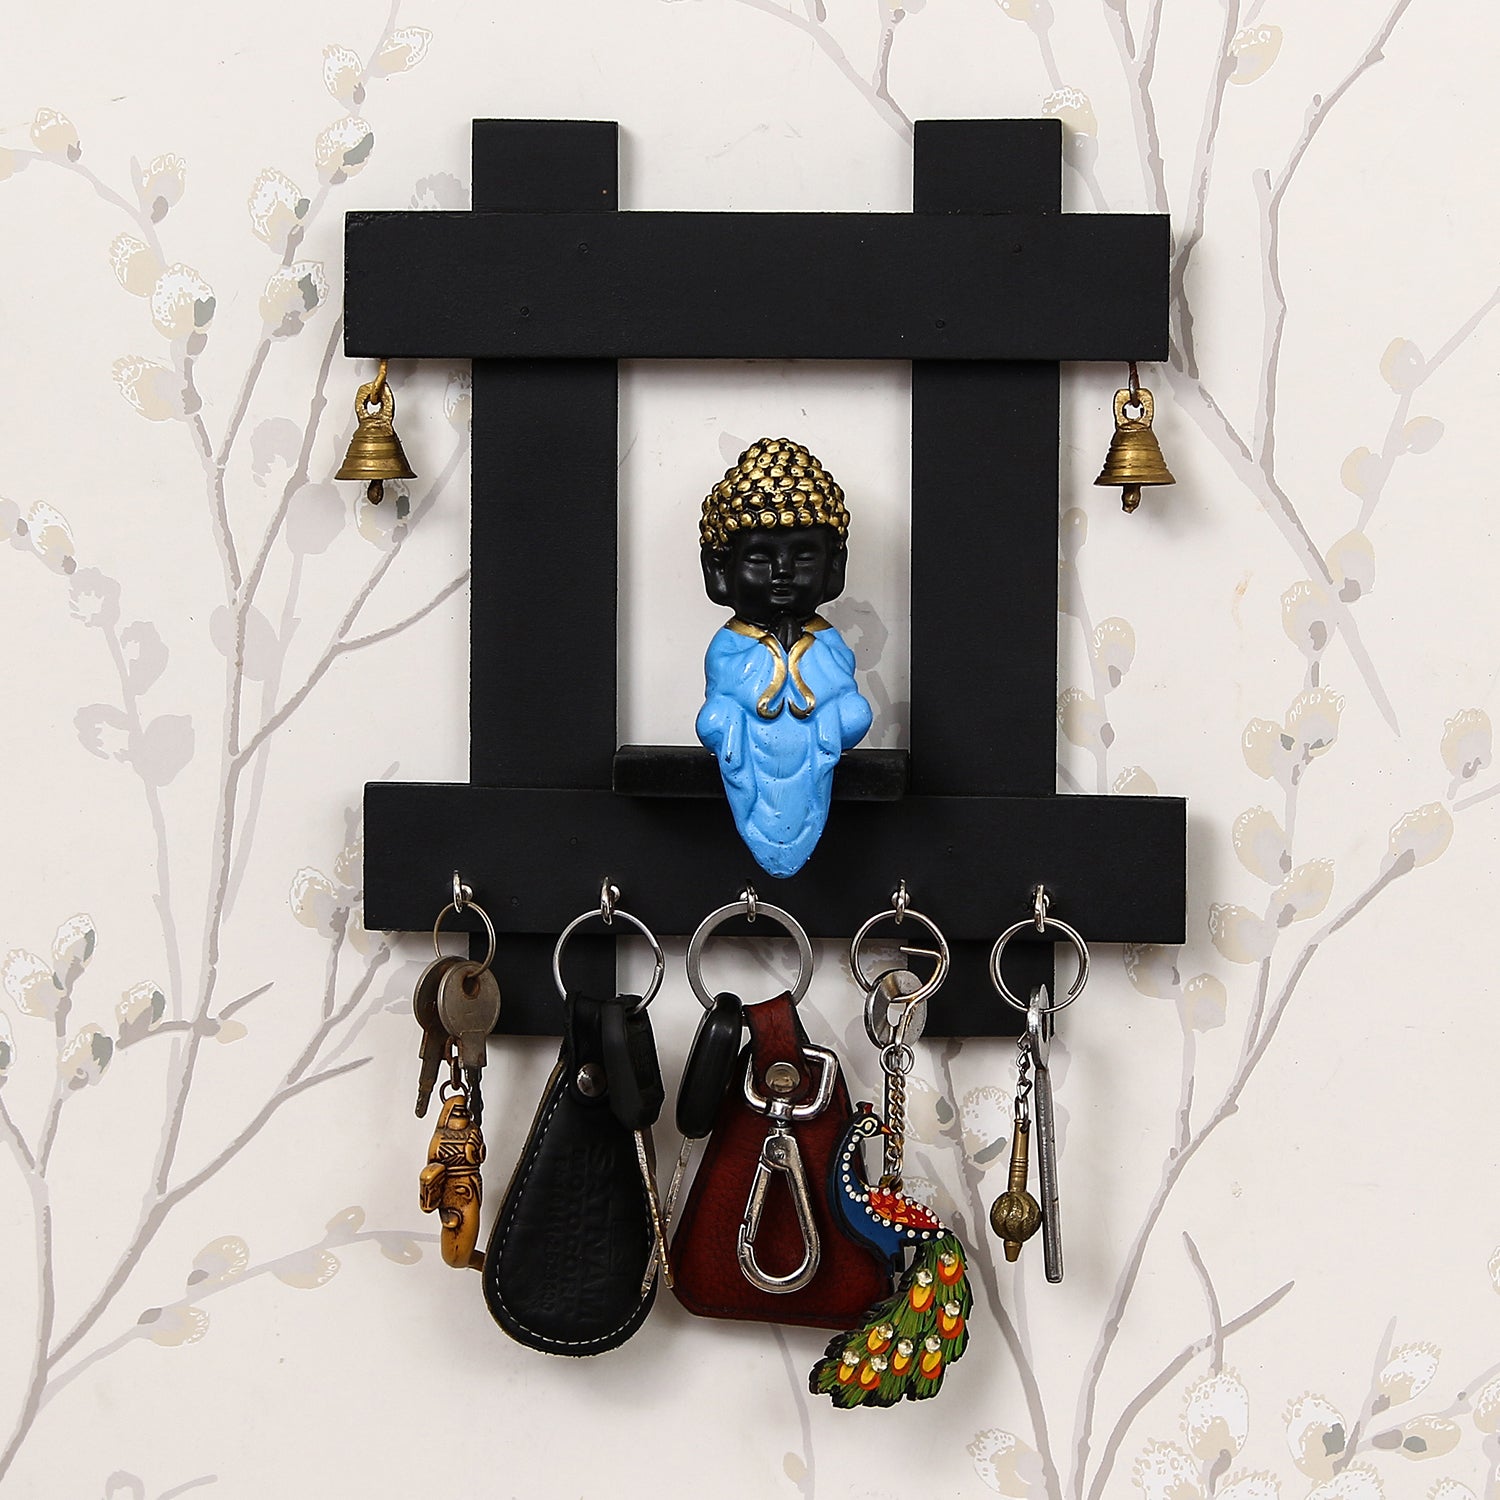 Blue and Black Peaceful Monk Buddha Idol Sitting Wooden Keyholder with 5 Key hooks